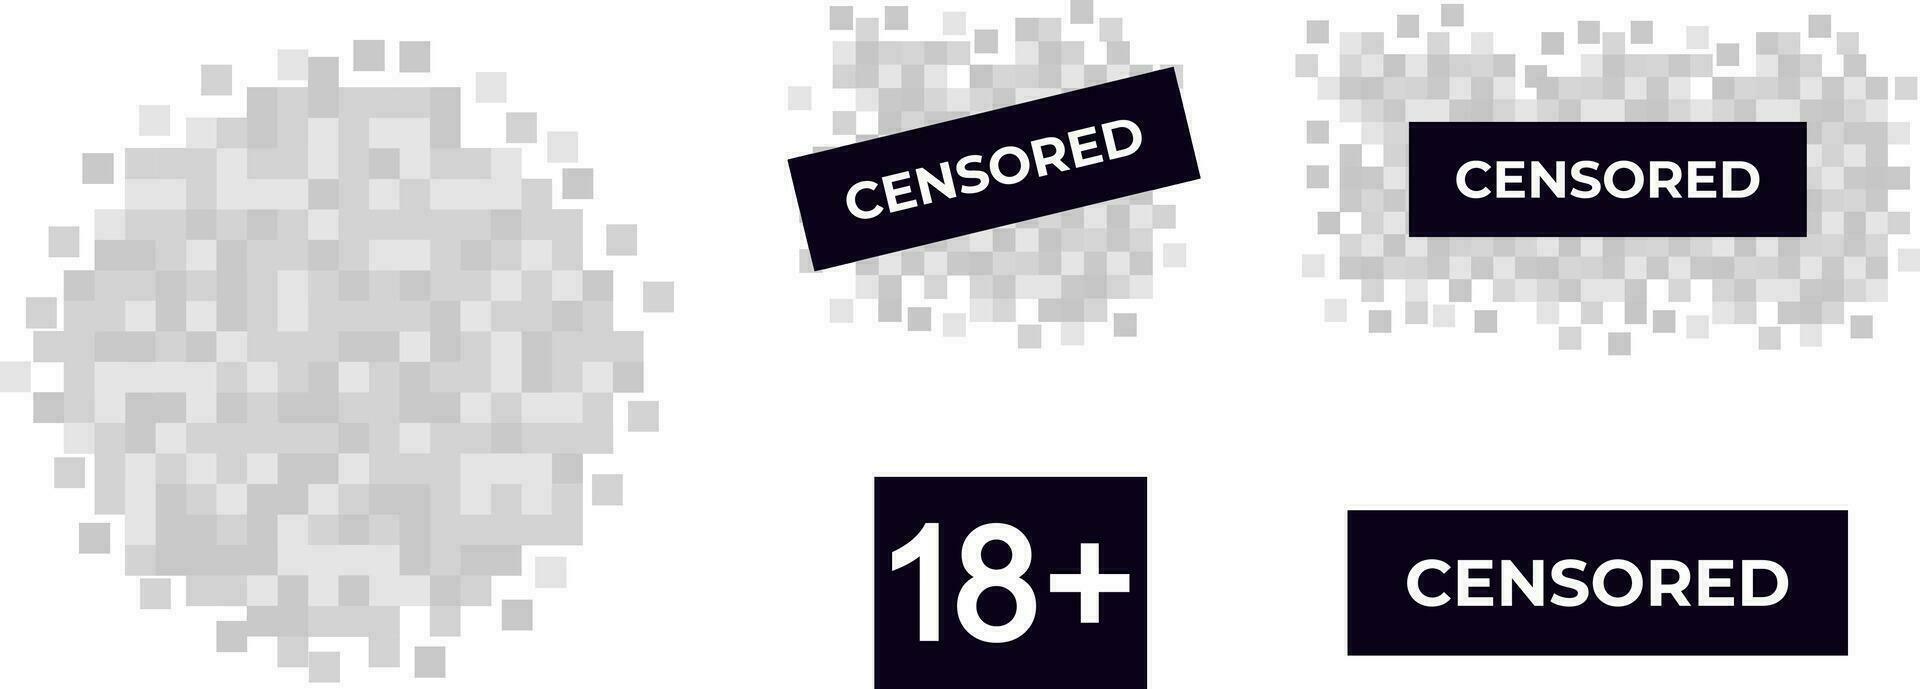 censurado advertencia contenido en píxeles censura visita con etiqueta censura pintado terminado escenas crueldad y violencia perjudicial a vector Psique